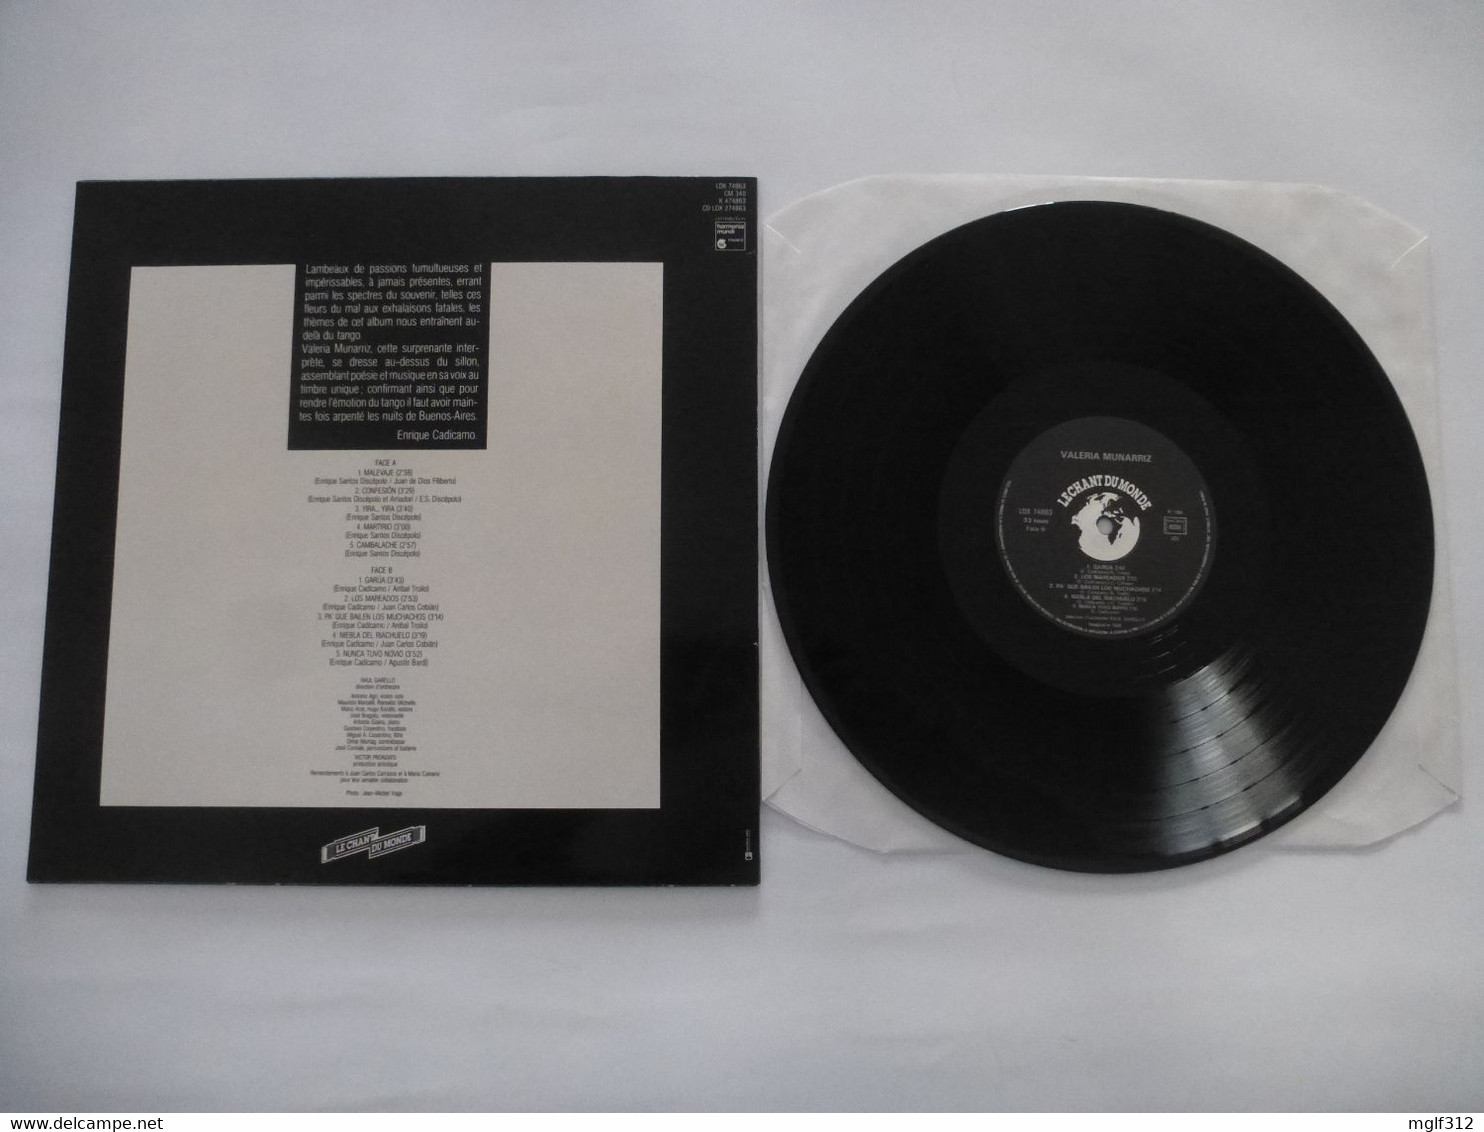 VALERIA MUNARRIZ : LP QUEL TANGO ! + Un Insert Texte Traduit En Français - Editions Le Chant Du Monde 1986 - Sonstige - Spanische Musik